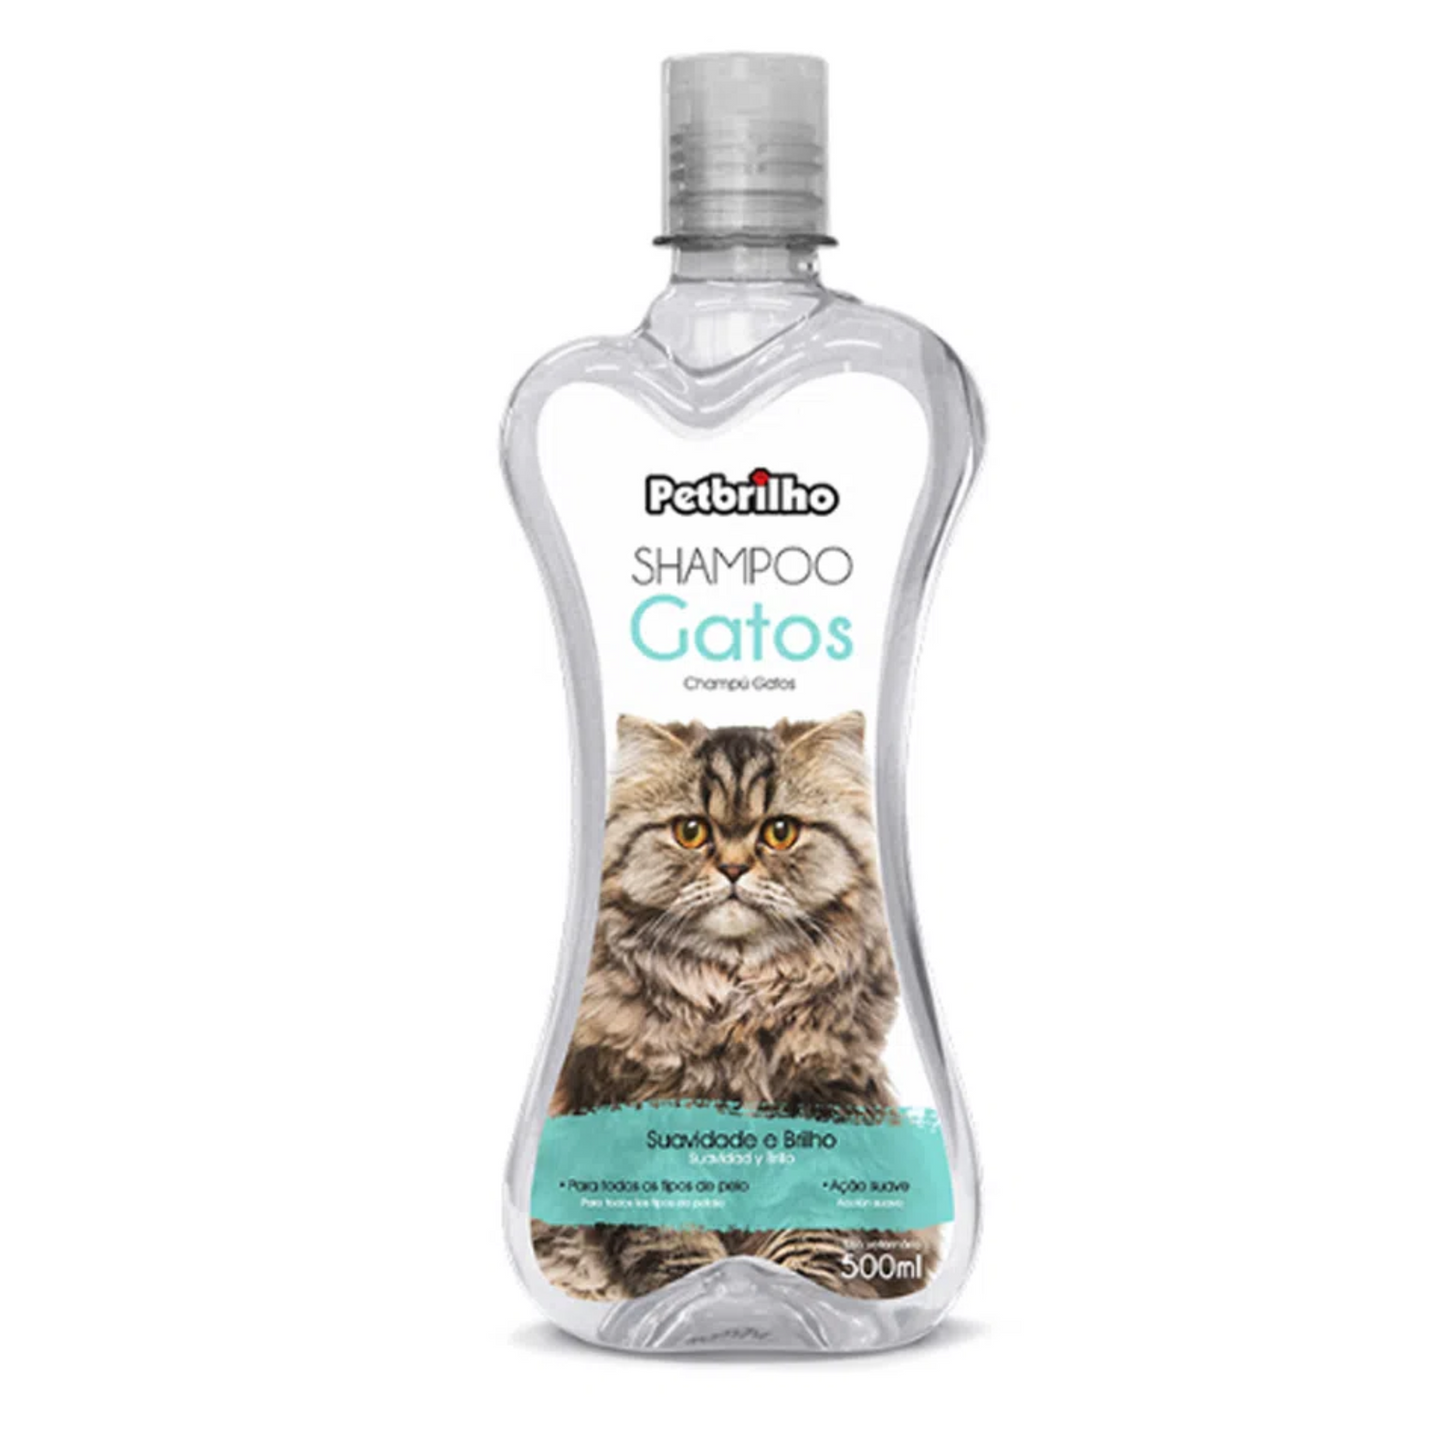 PETBRILHO Shampoo para Gatos